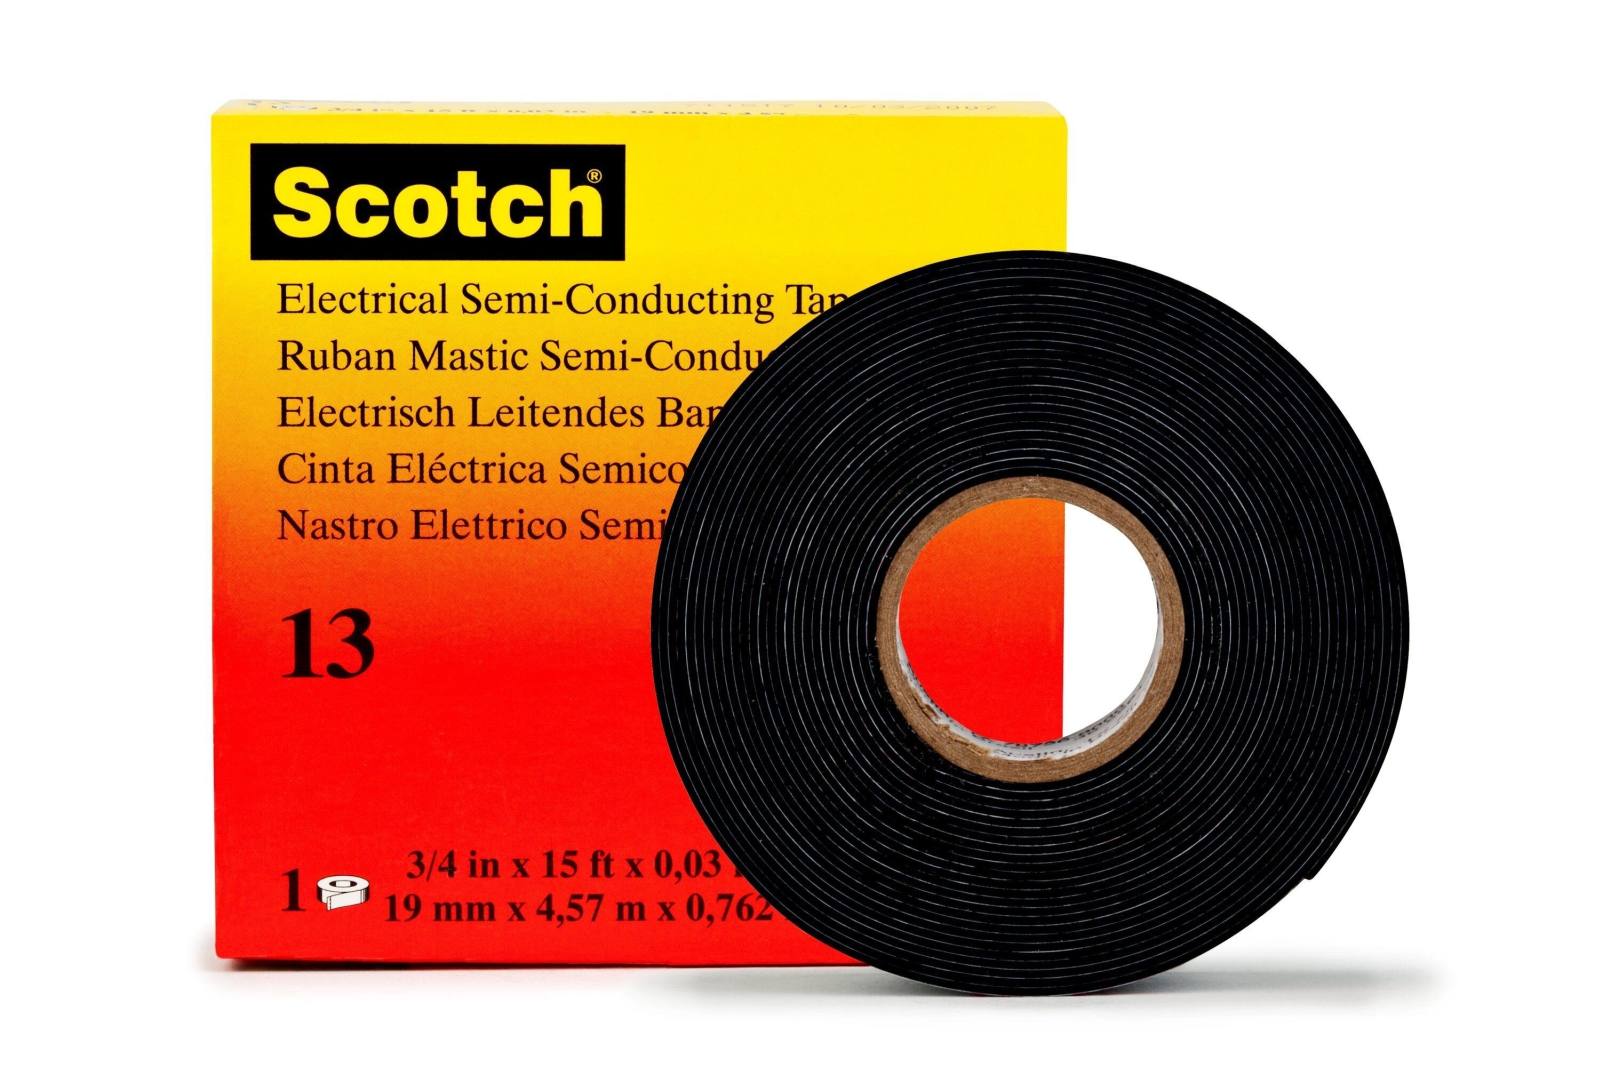 3M Scotch 13 ethyleenpropyleen-rubbertape, zelfdichtend, geleidend, zwart, 19 mm x 4,5 m, 0,76 mm